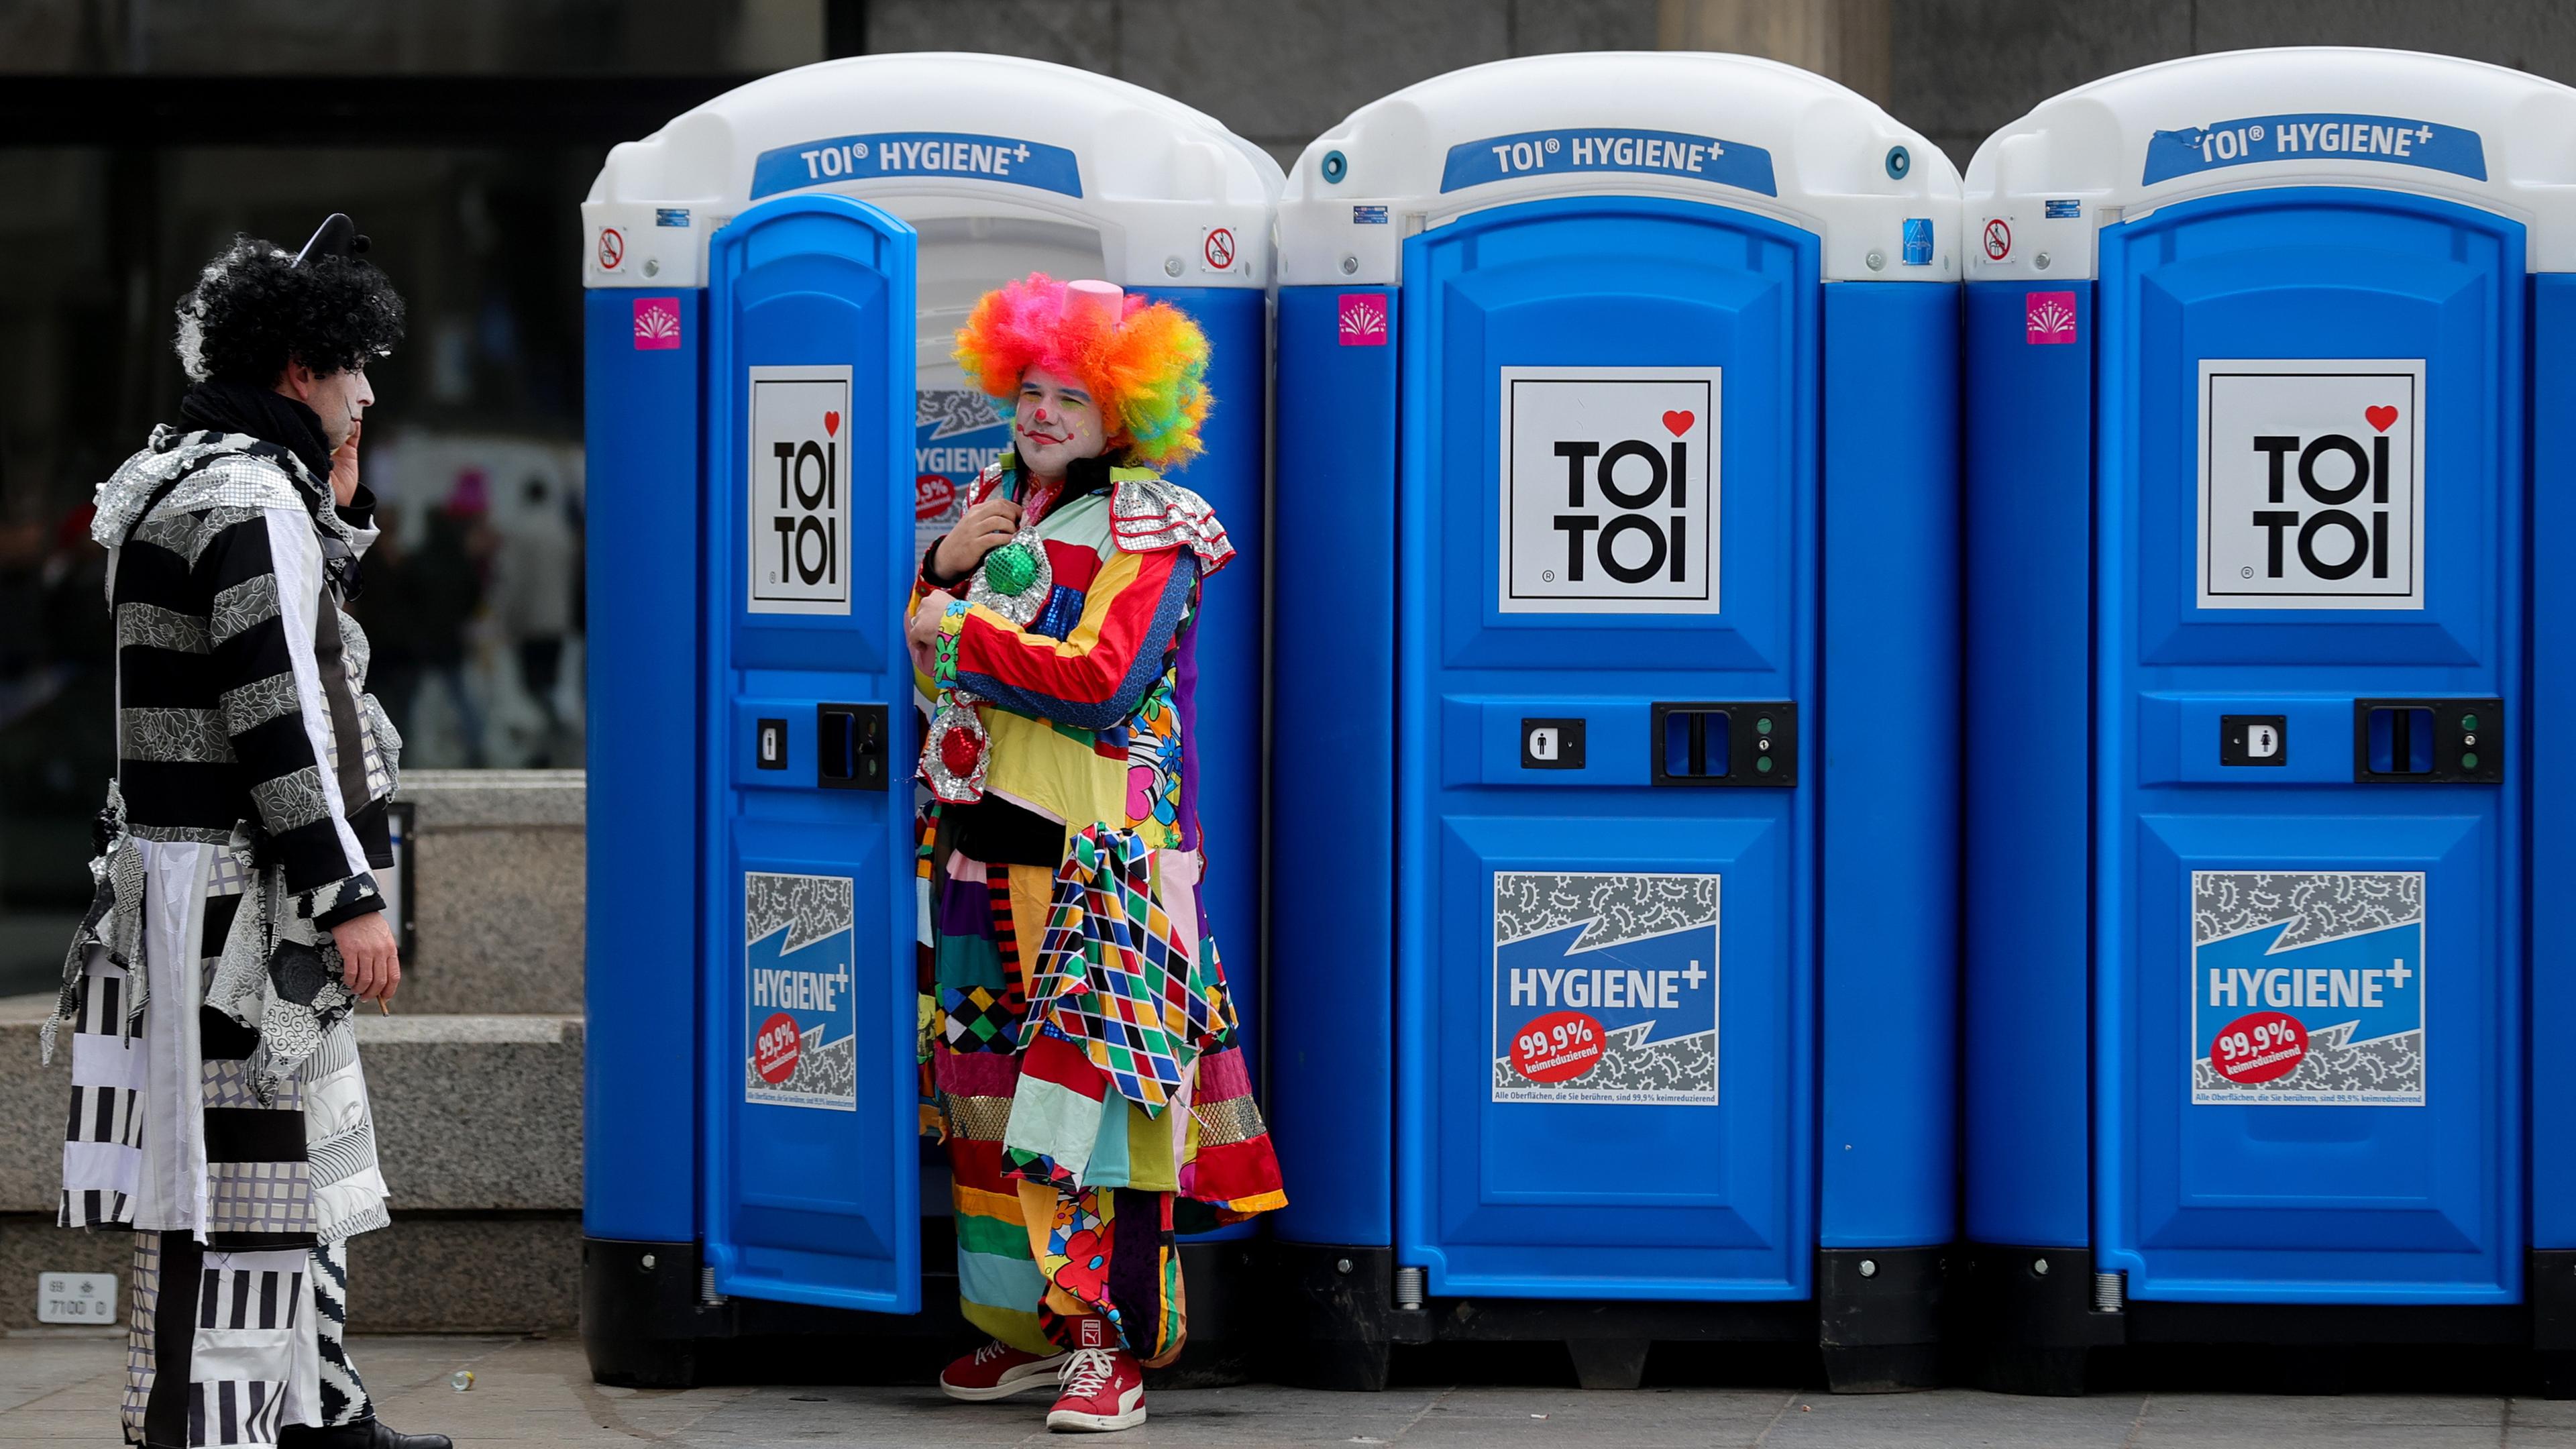 Kostümierte Nachtschwärmer vor mobilen Toiletten der traditionelle Karneval "Weiberfastnacht" (Frauenkarneval oder Fetter Donnerstag) in Köln